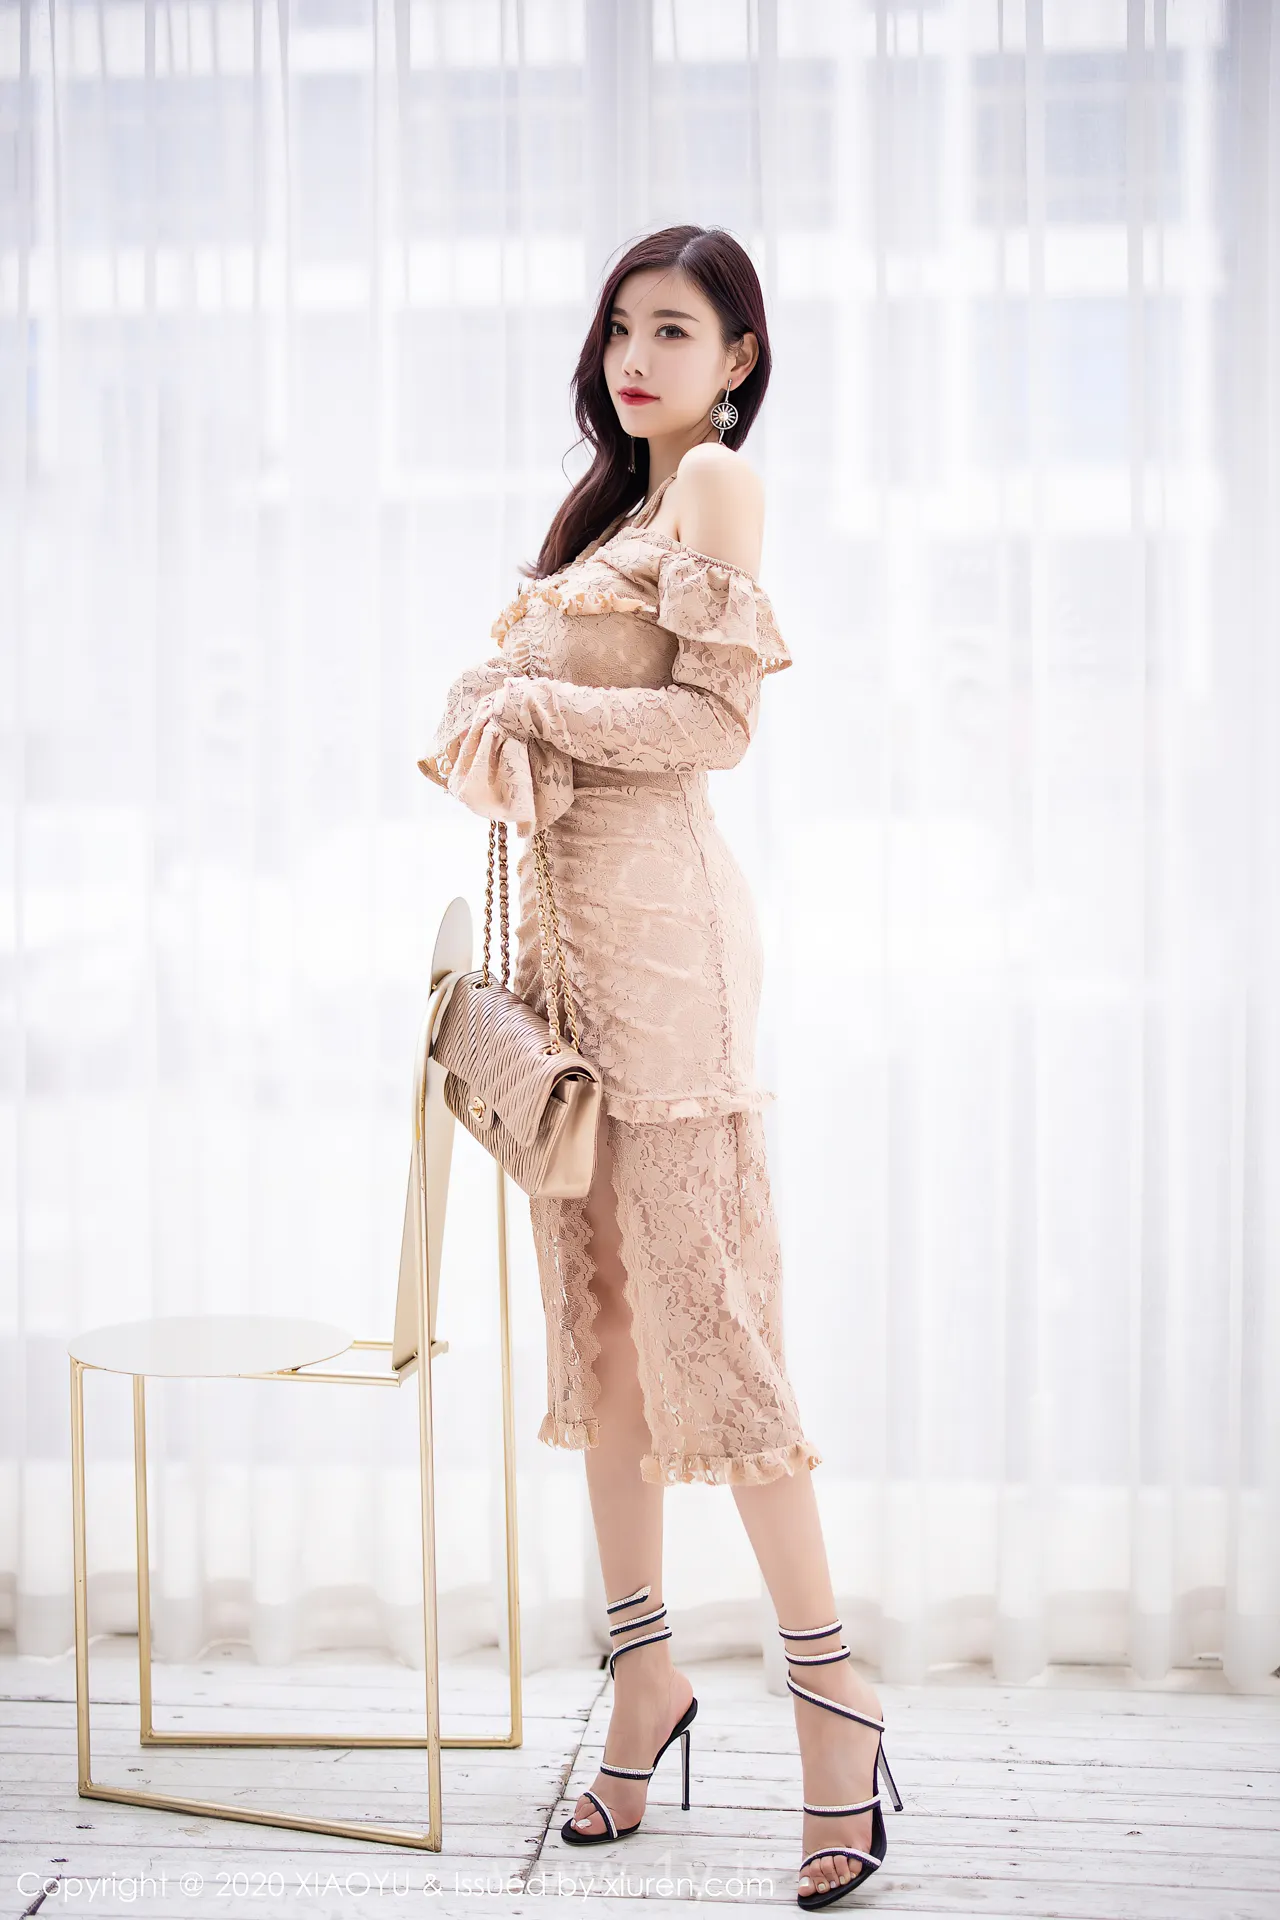 语画界 VOL.317 Classy & Slender Chinese Mature Princess 杨晨晨sugar